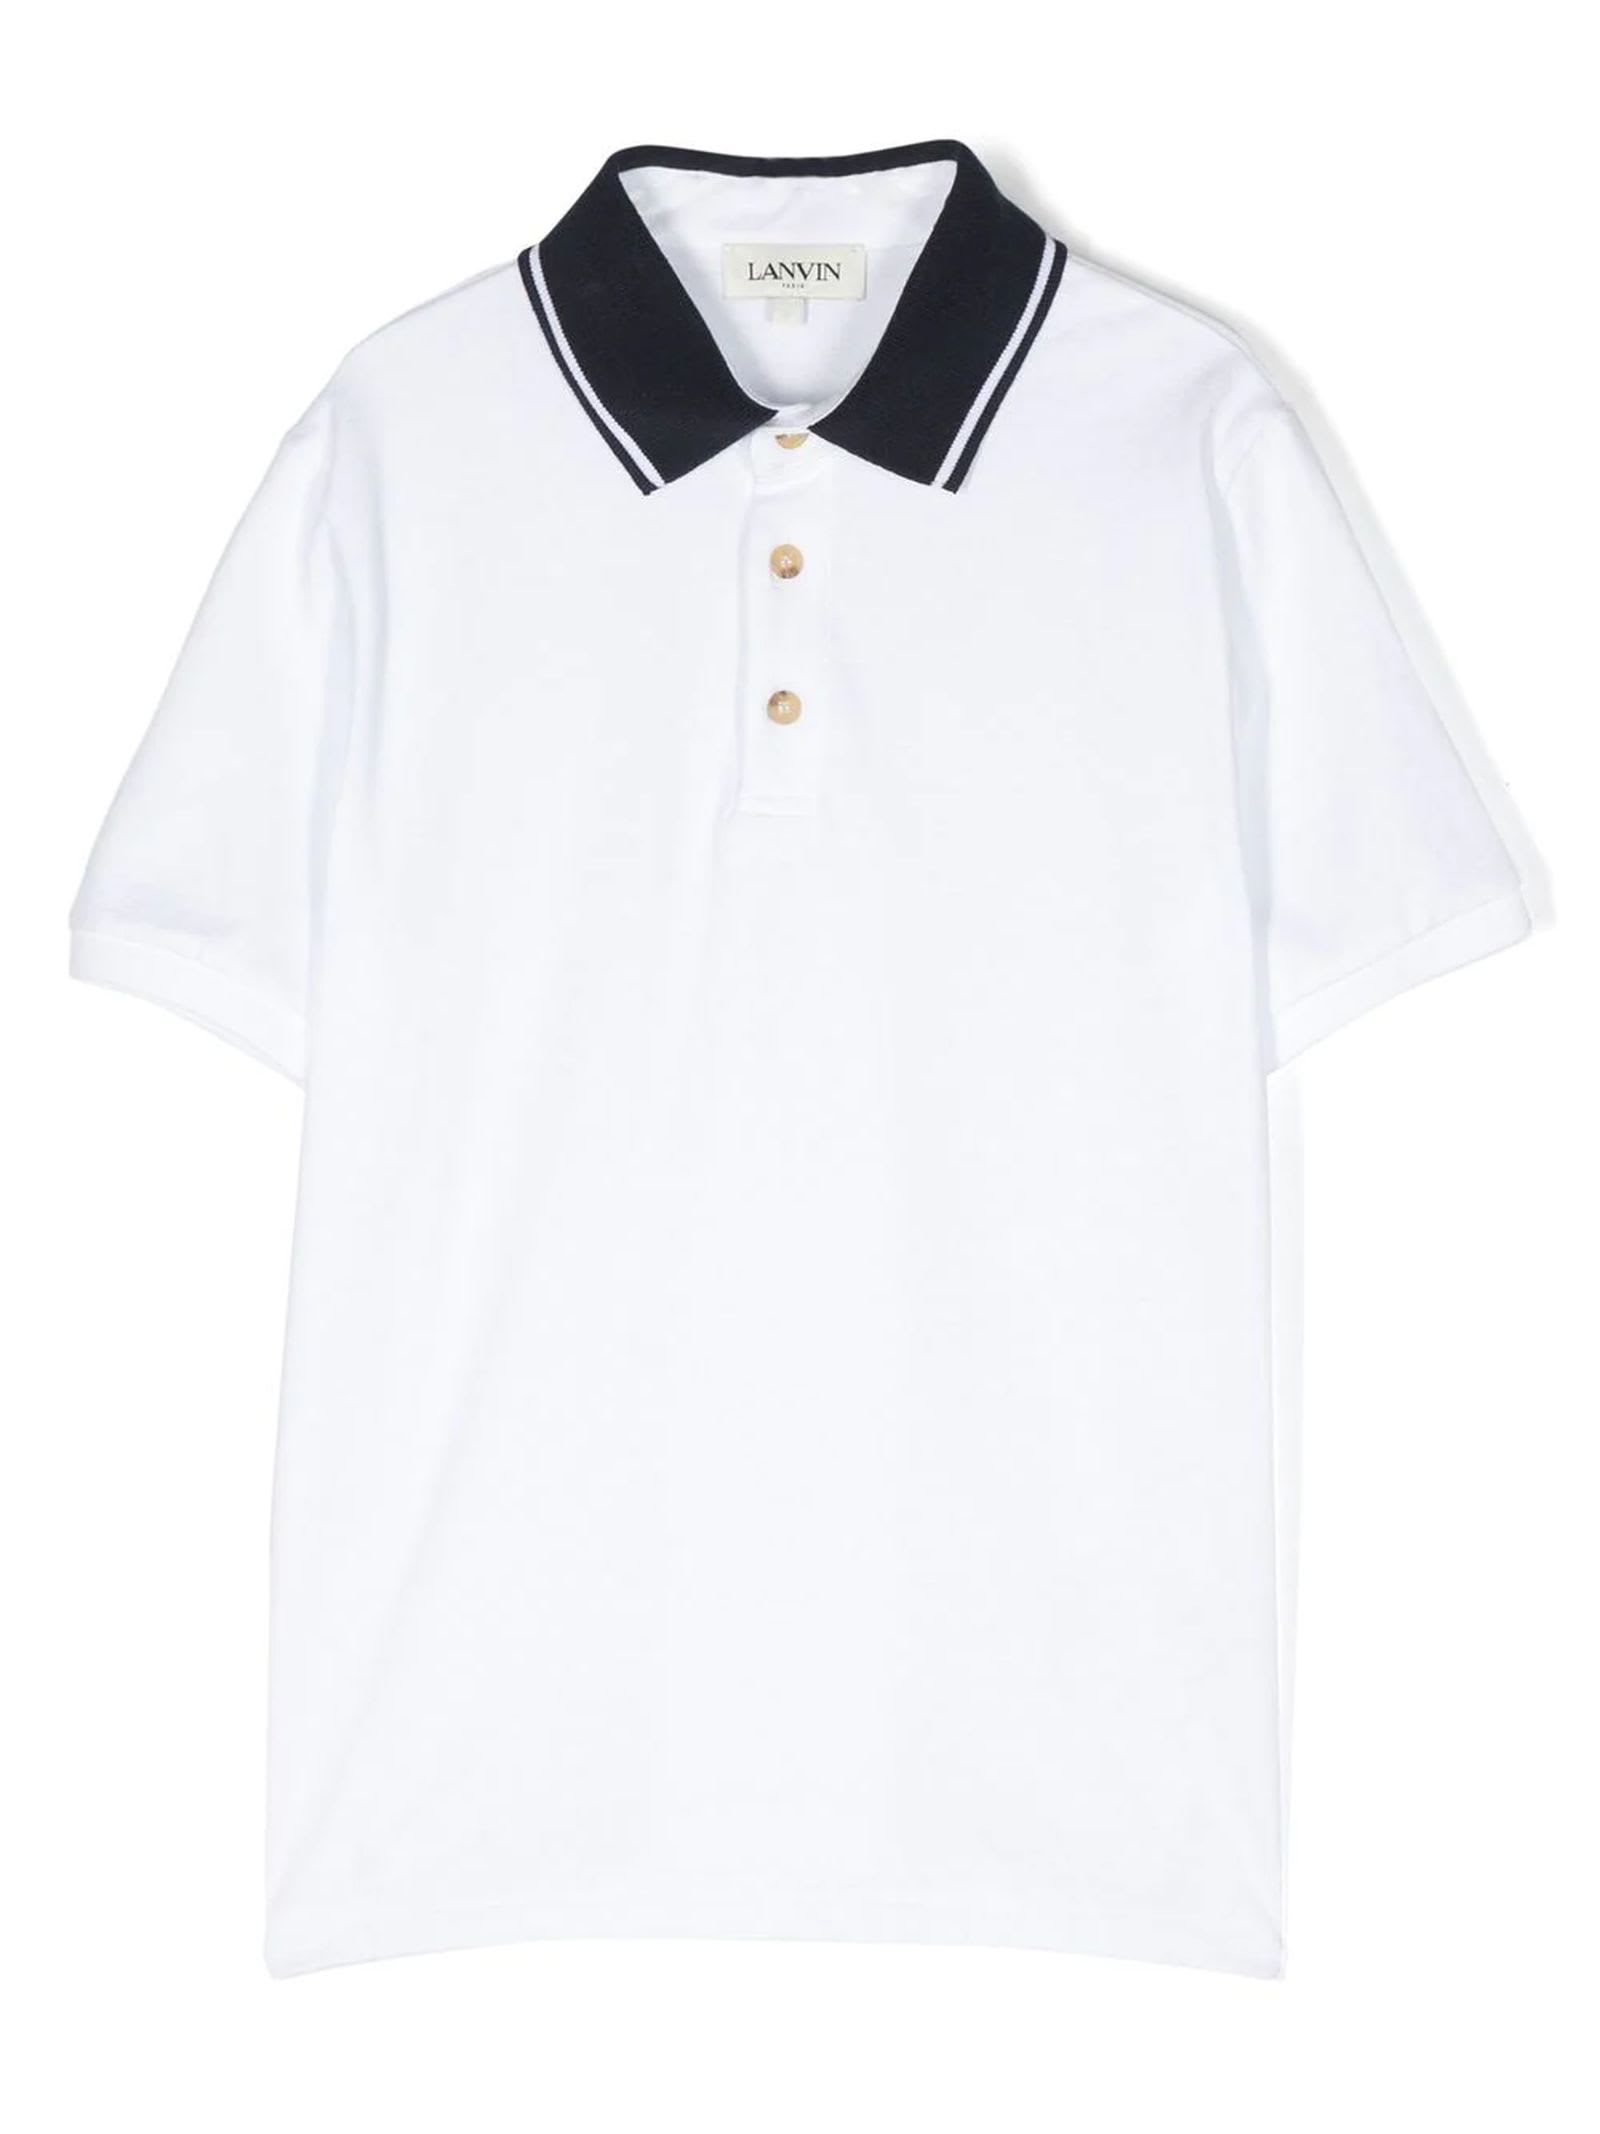 Lanvin Kids' White Cotton Polo Shirt In Bianco